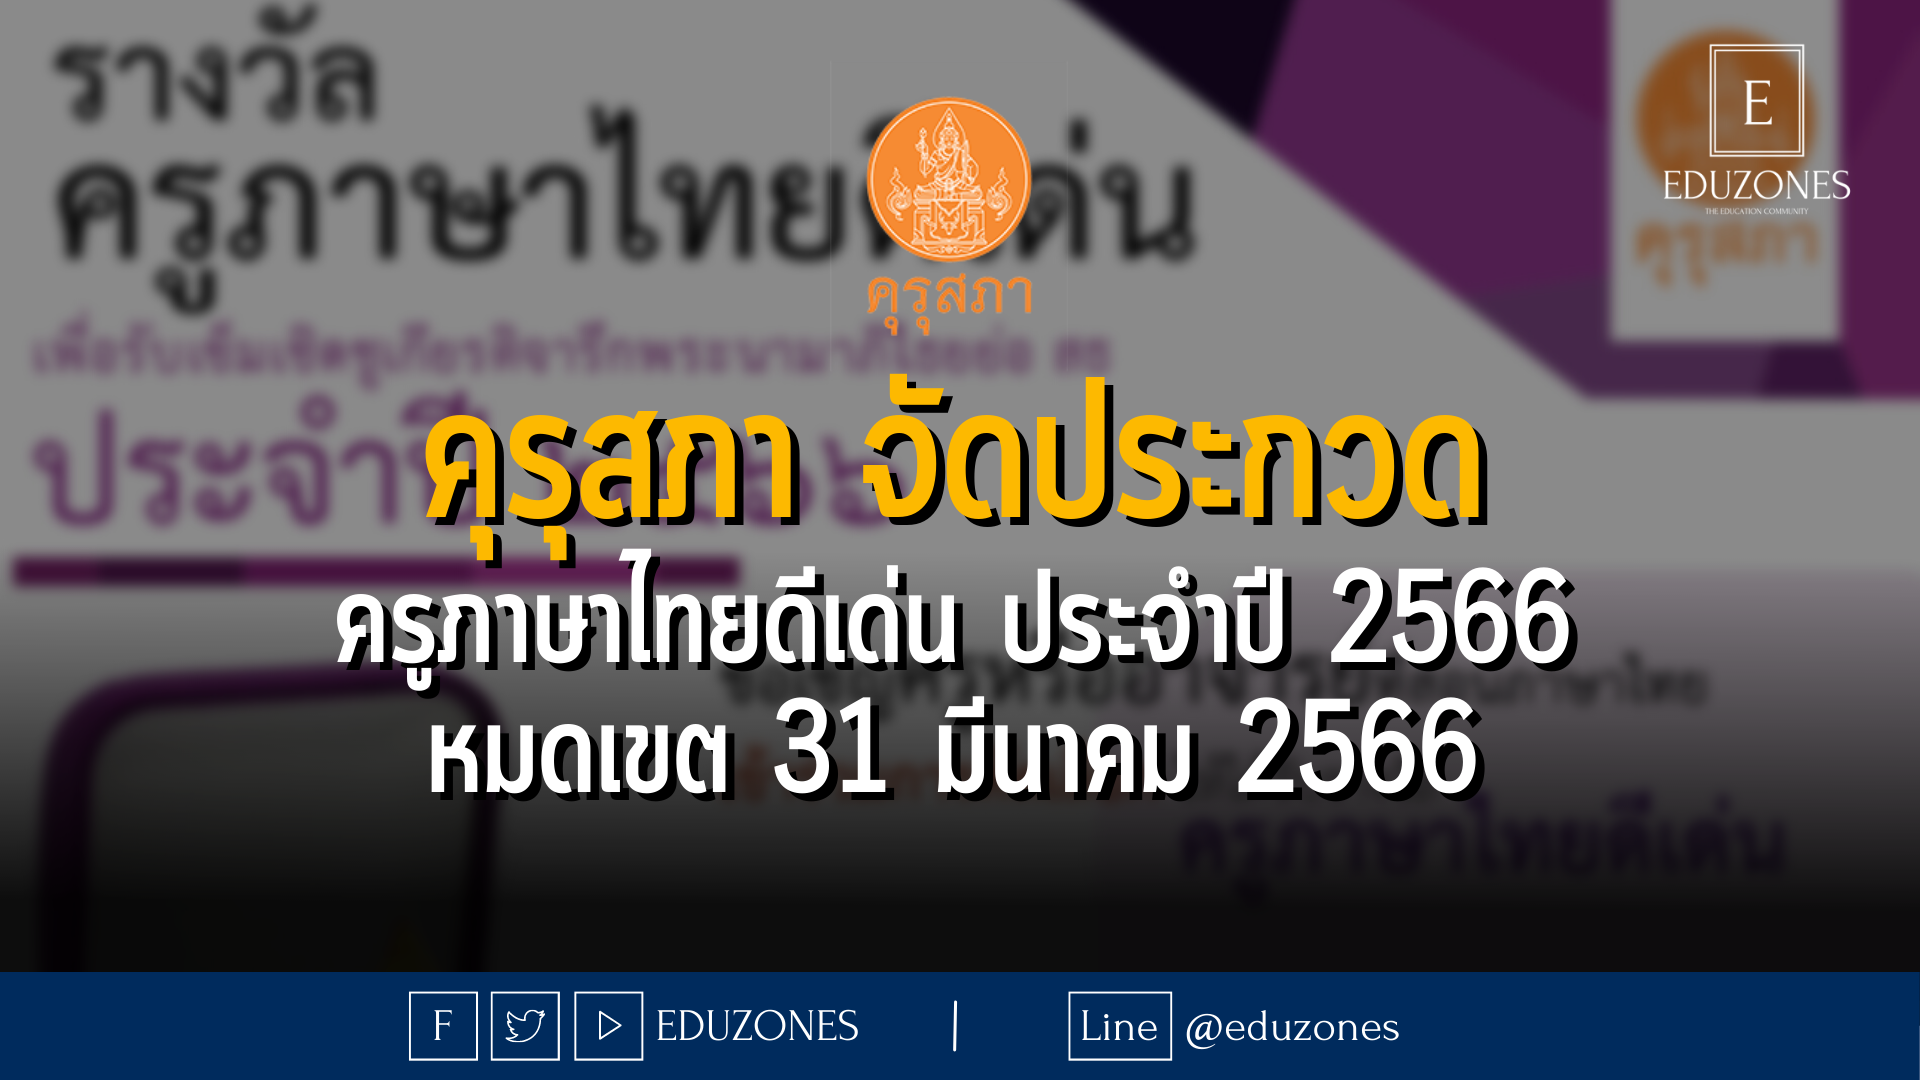 คุรุสภา จัดประกวด ครูภาษาไทยดีเด่น ประจำปี 2566 - หมดเขต 31 มีนาคม 2566